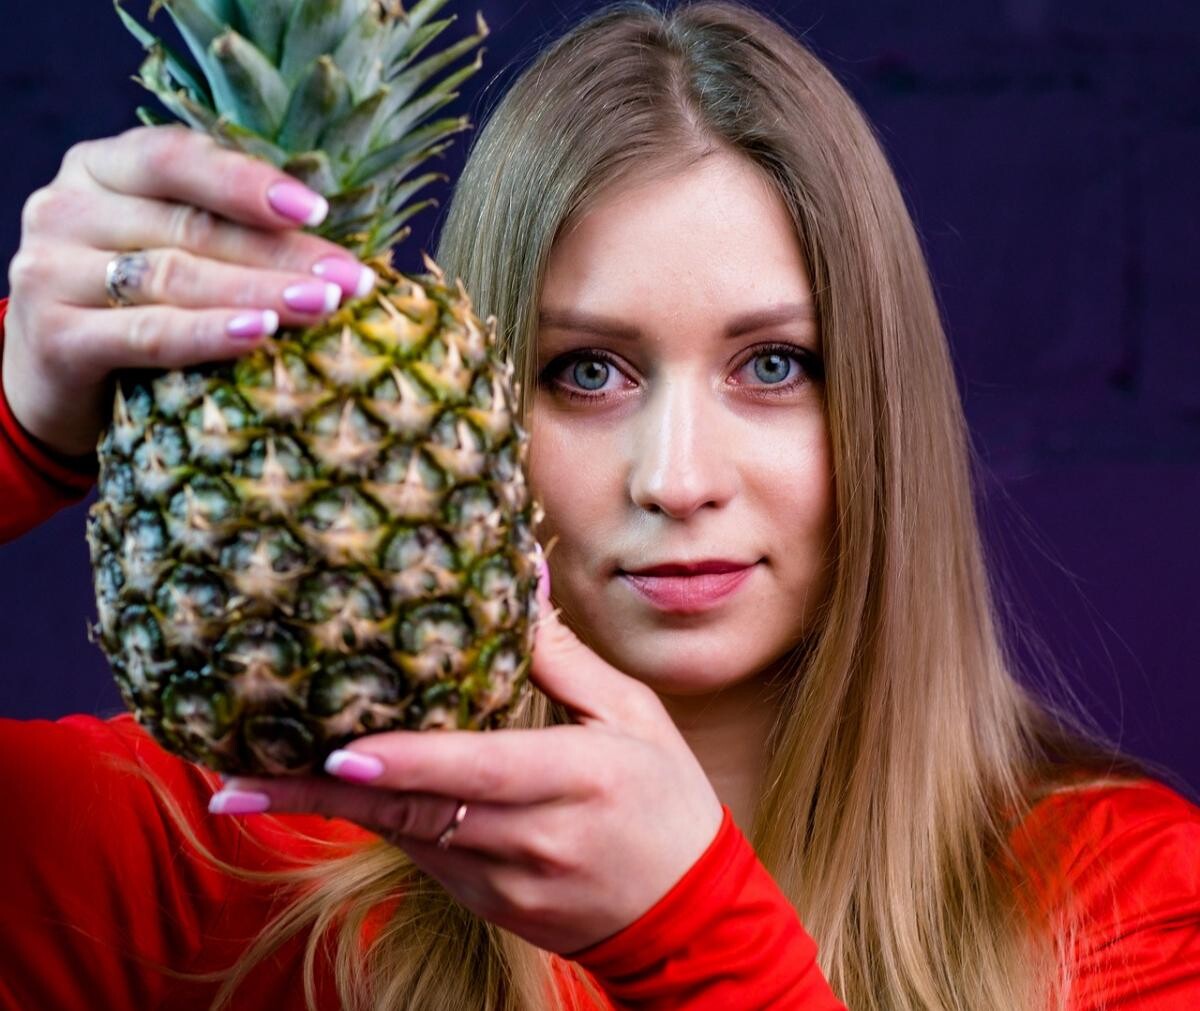 Dieta cu ananas, cea mai eficientă - slăbeşti cinci kilograme, în doar cinci zile